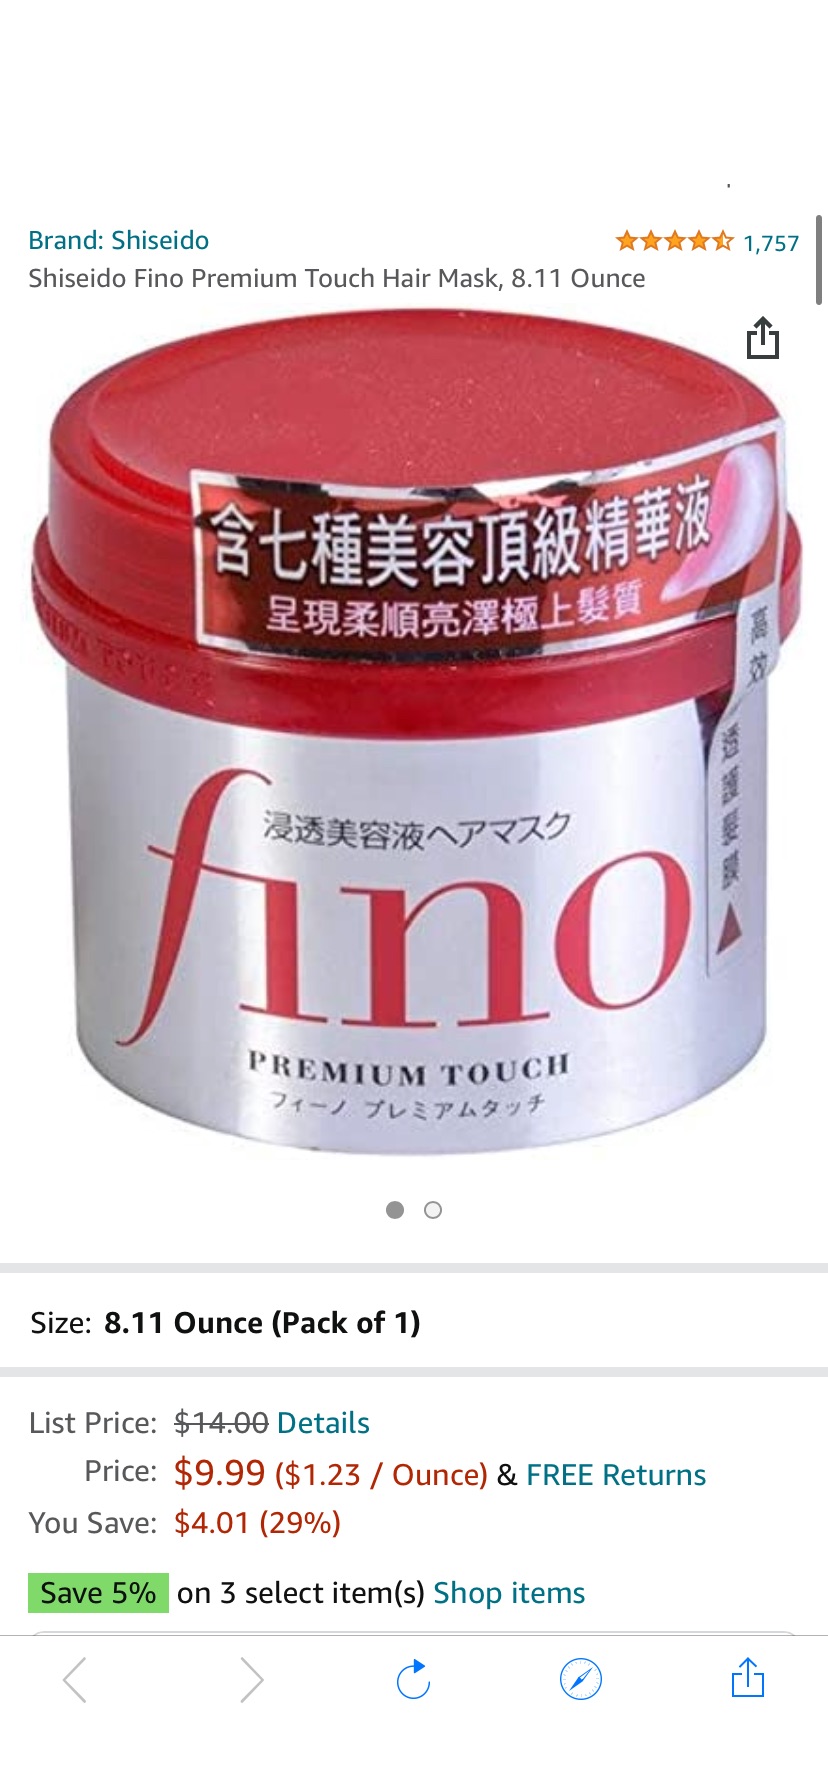 发膜Amazon.com: Shiseido Fino Premium Touch Hair Mask, 8.11 Ounce : Beauty & Personal Care